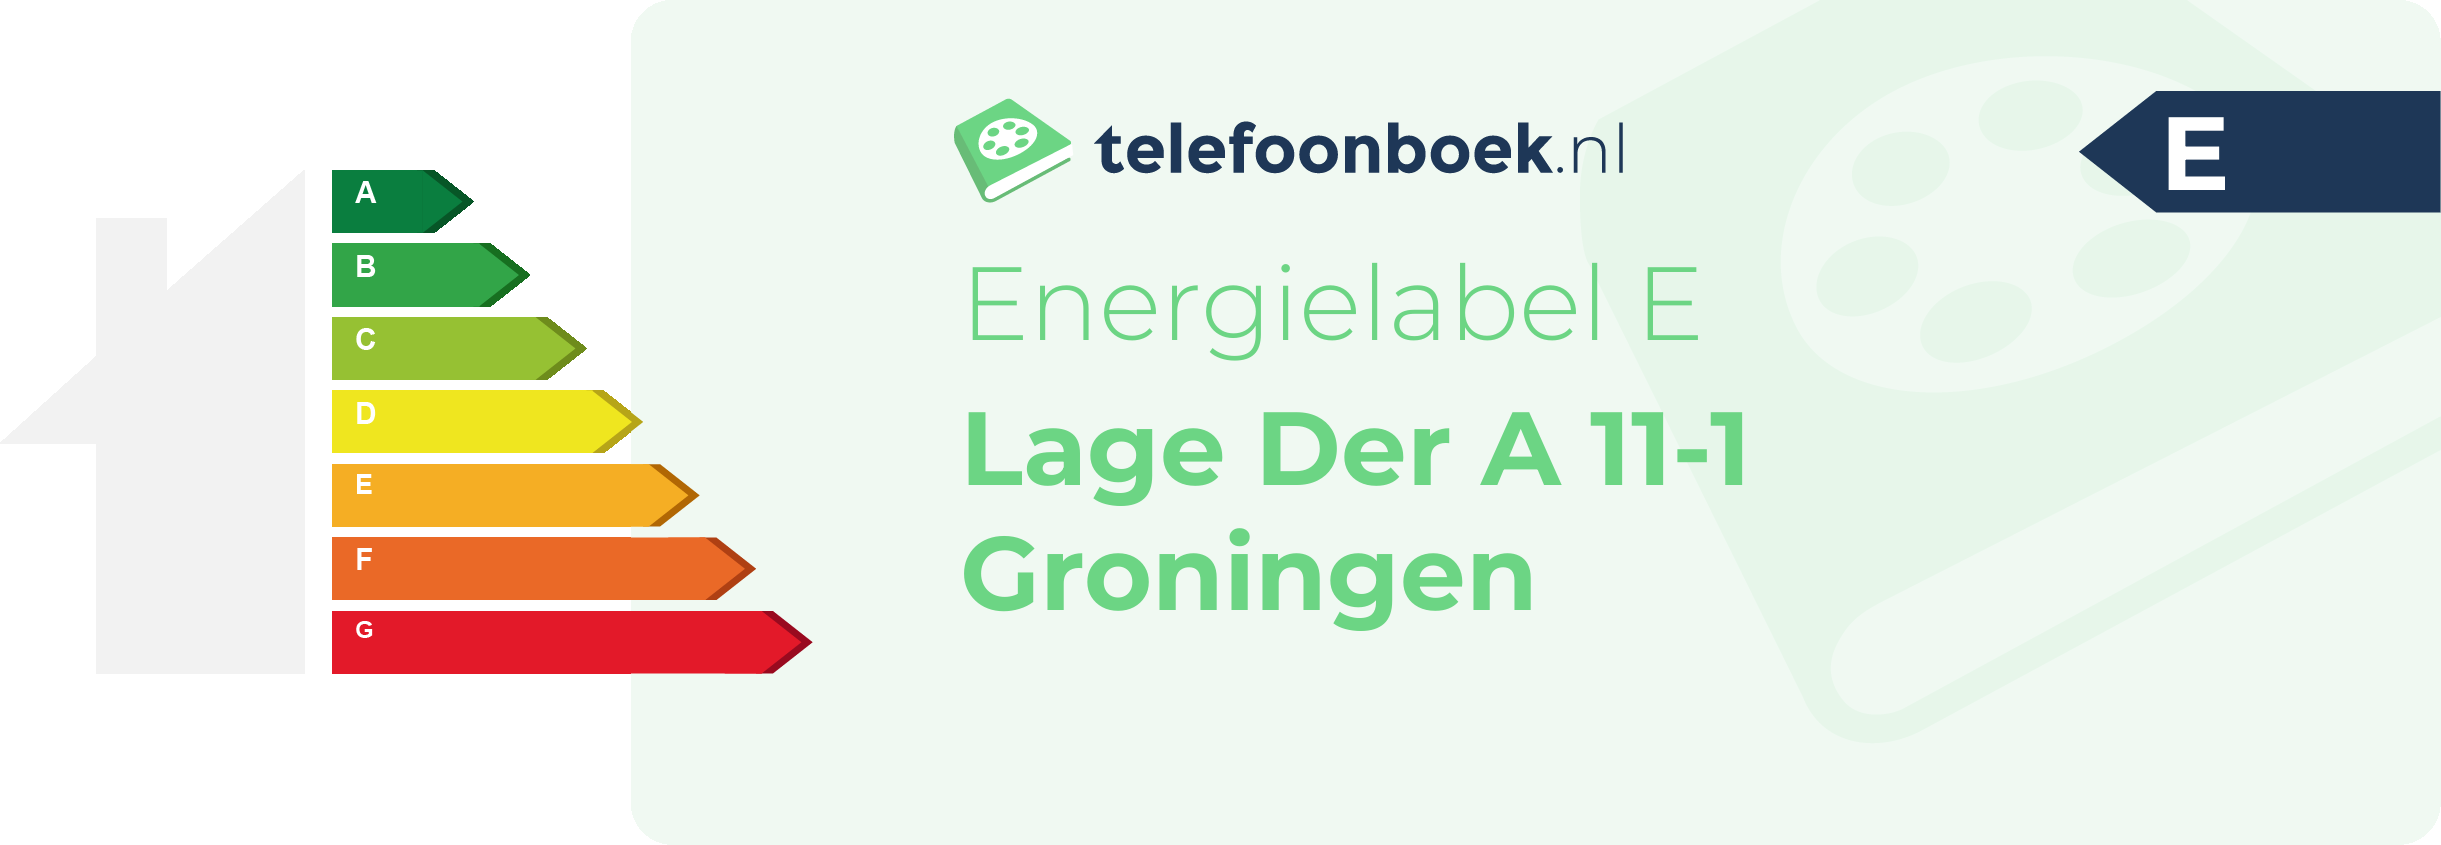 Energielabel Lage Der A 11-1 Groningen